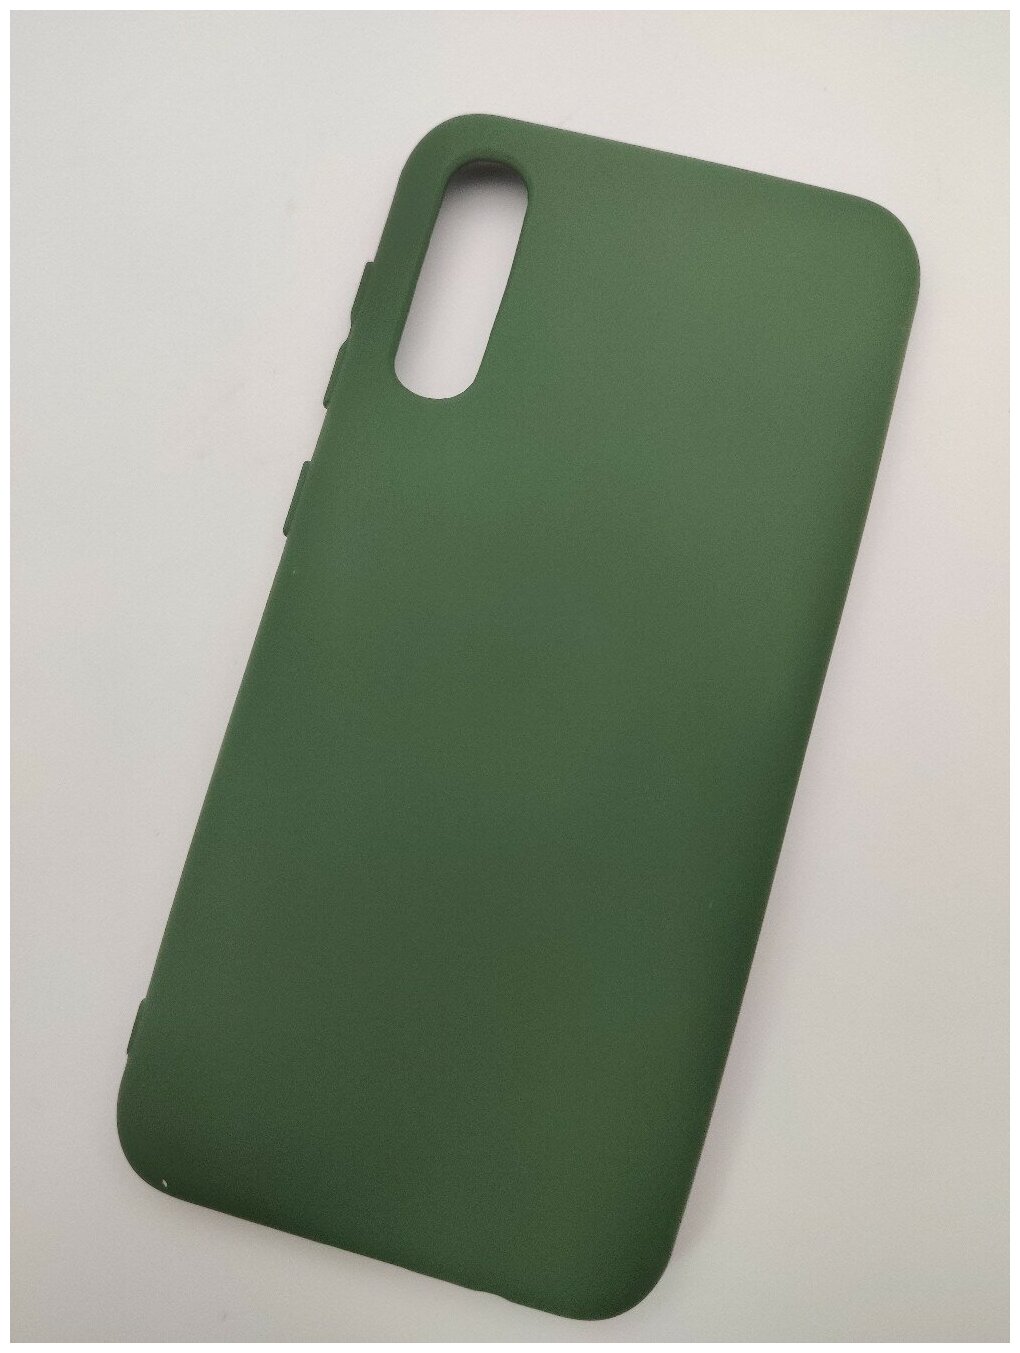 Soft touch Силиконовый чехол для Samsung Galaxy A50 2019 (SM-A505F) A50S / A30S тёмно-зеленый (болотный) с мягкой внутренней бахрамой / микрофиброй / самсунг галакси а50